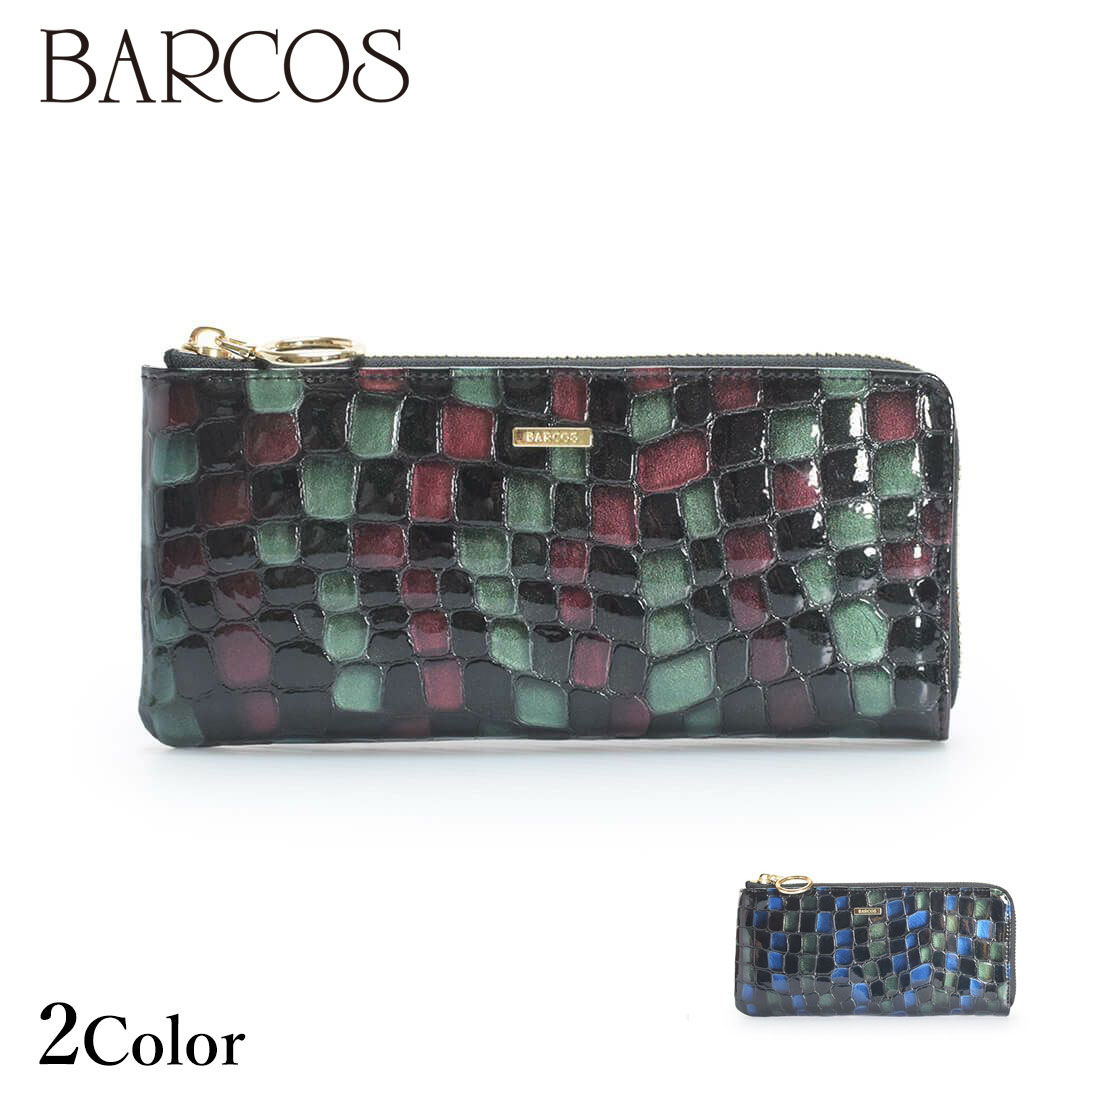 バルコス 長財布 レディース BARCOS 配色ソフトステンドガラスレザーL字型財布 レディース 全2色 ONESIZE バルコス